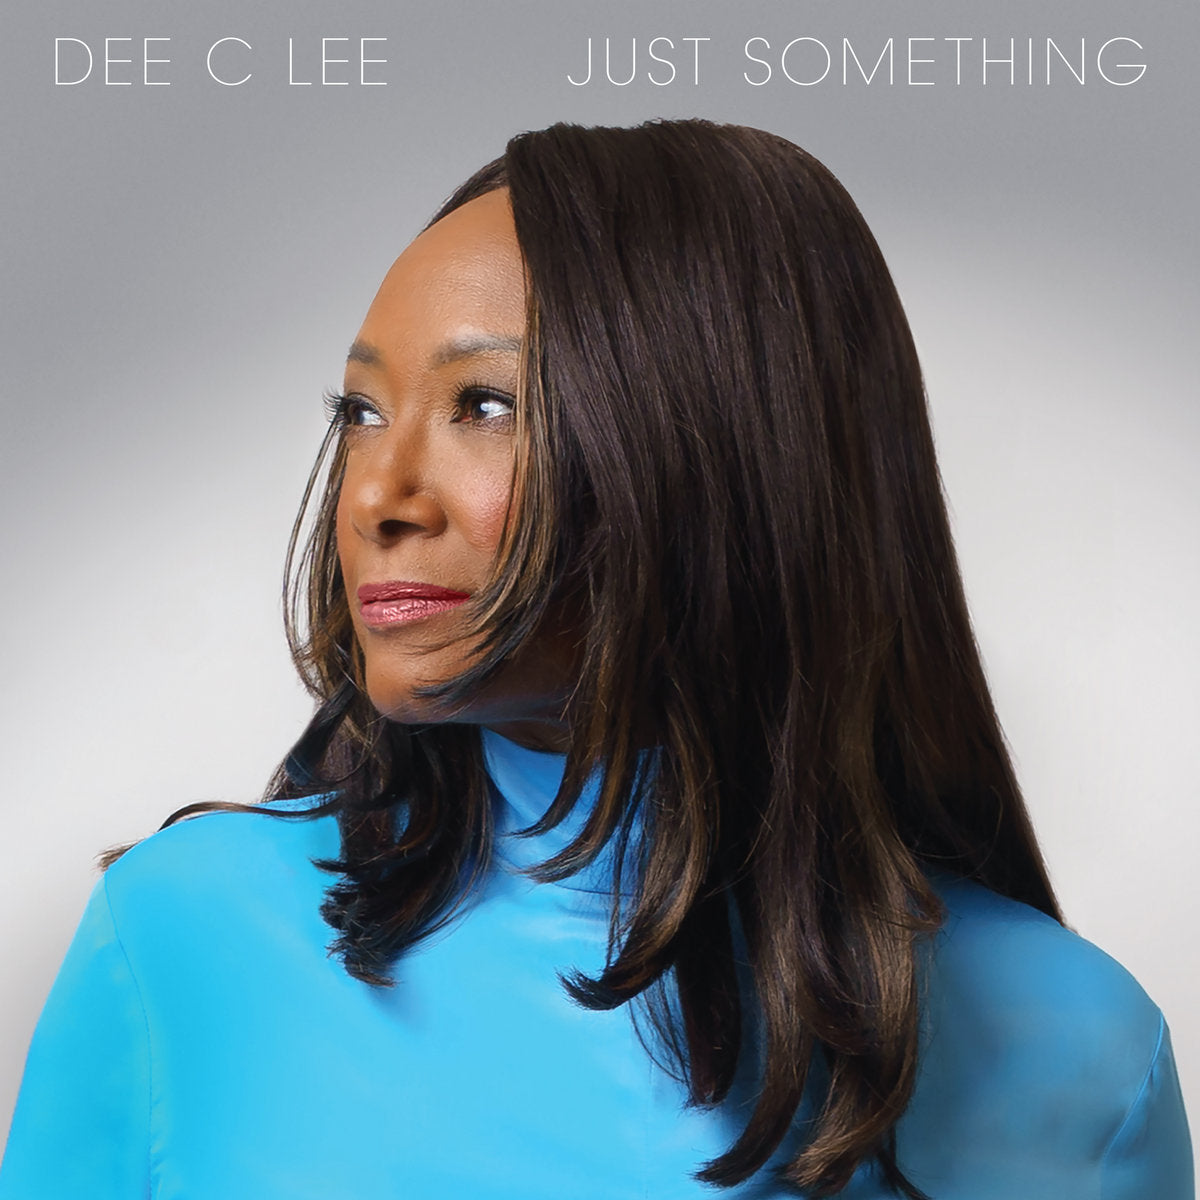 Dee C Lee - Just Something: Vinyl LP